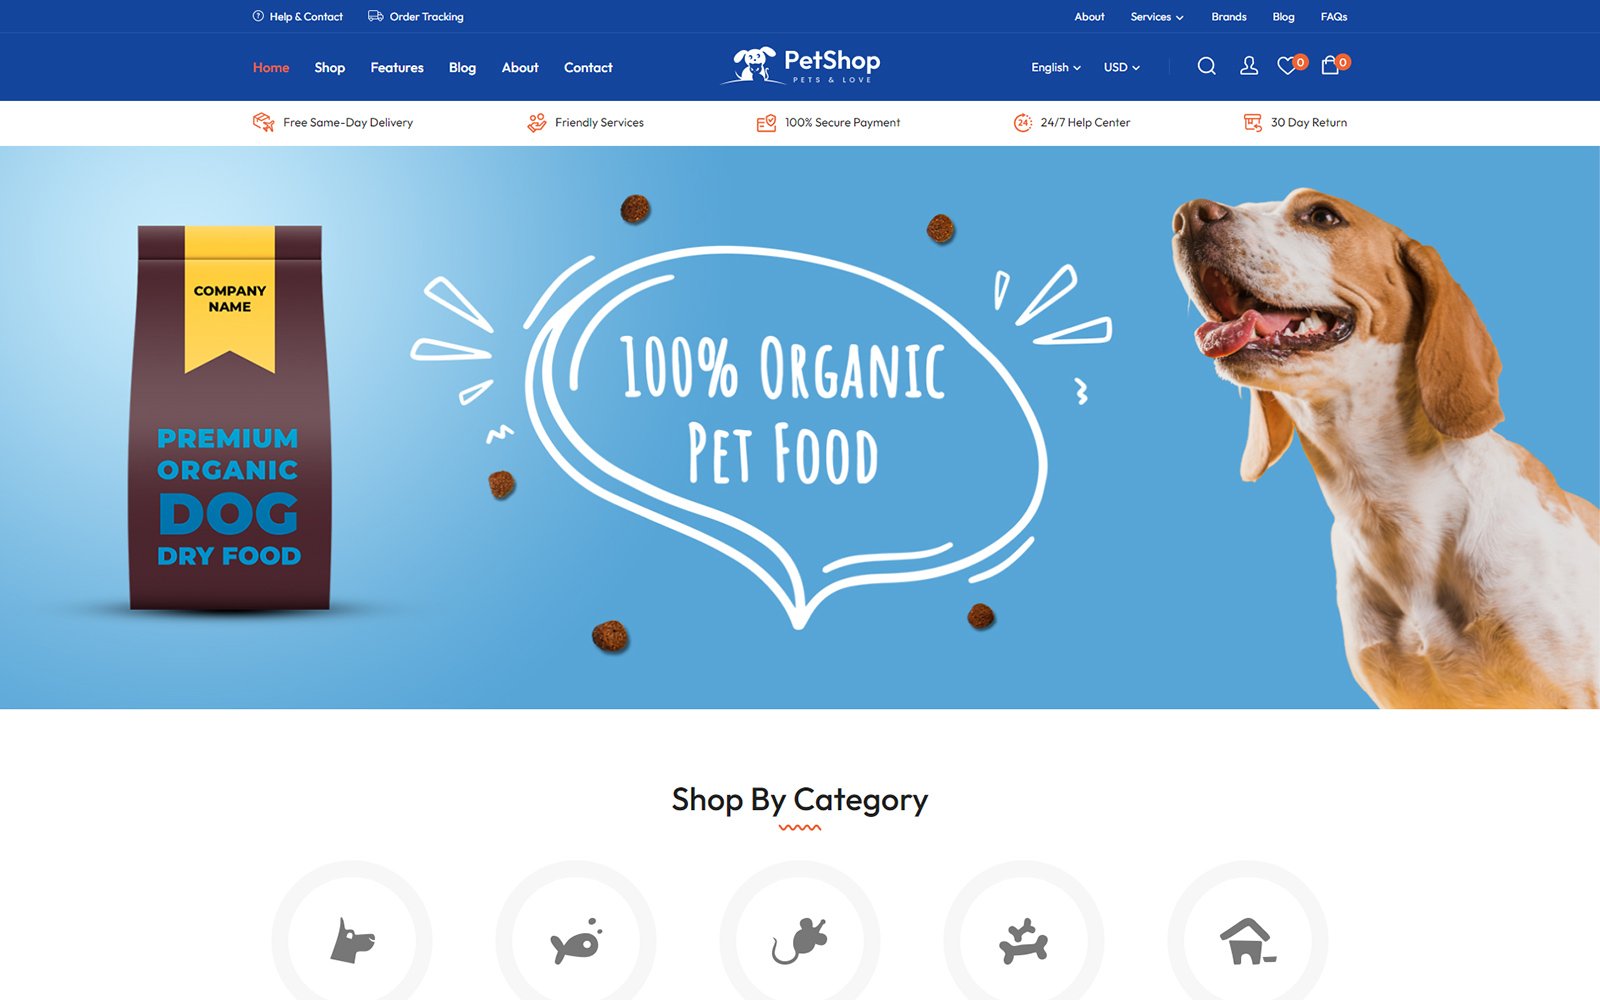 Plantilla para magento - Categoría: Animales y mascotas - versión para Desktop